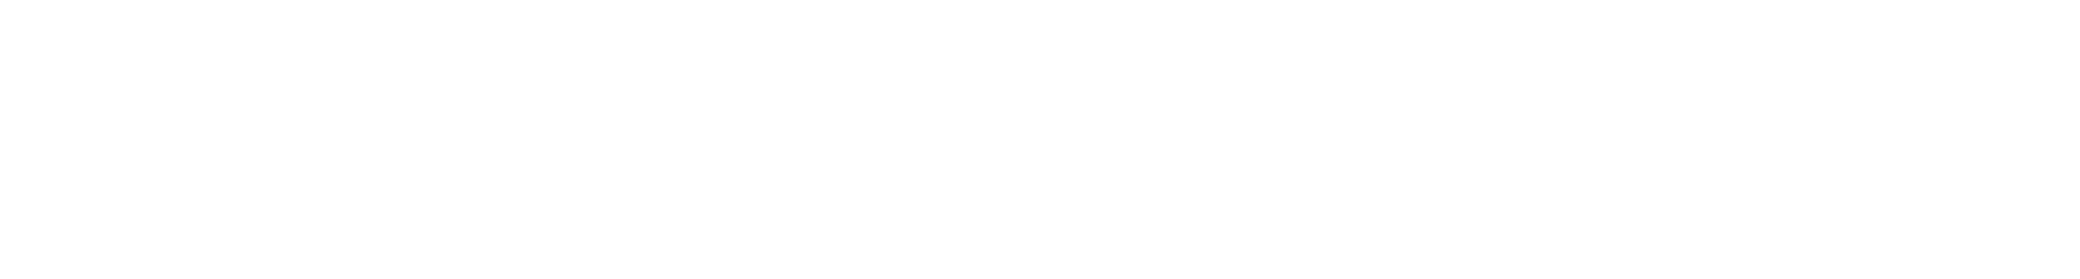 “幻”の初アニメ作品 ゴルゴ13 随時配信中